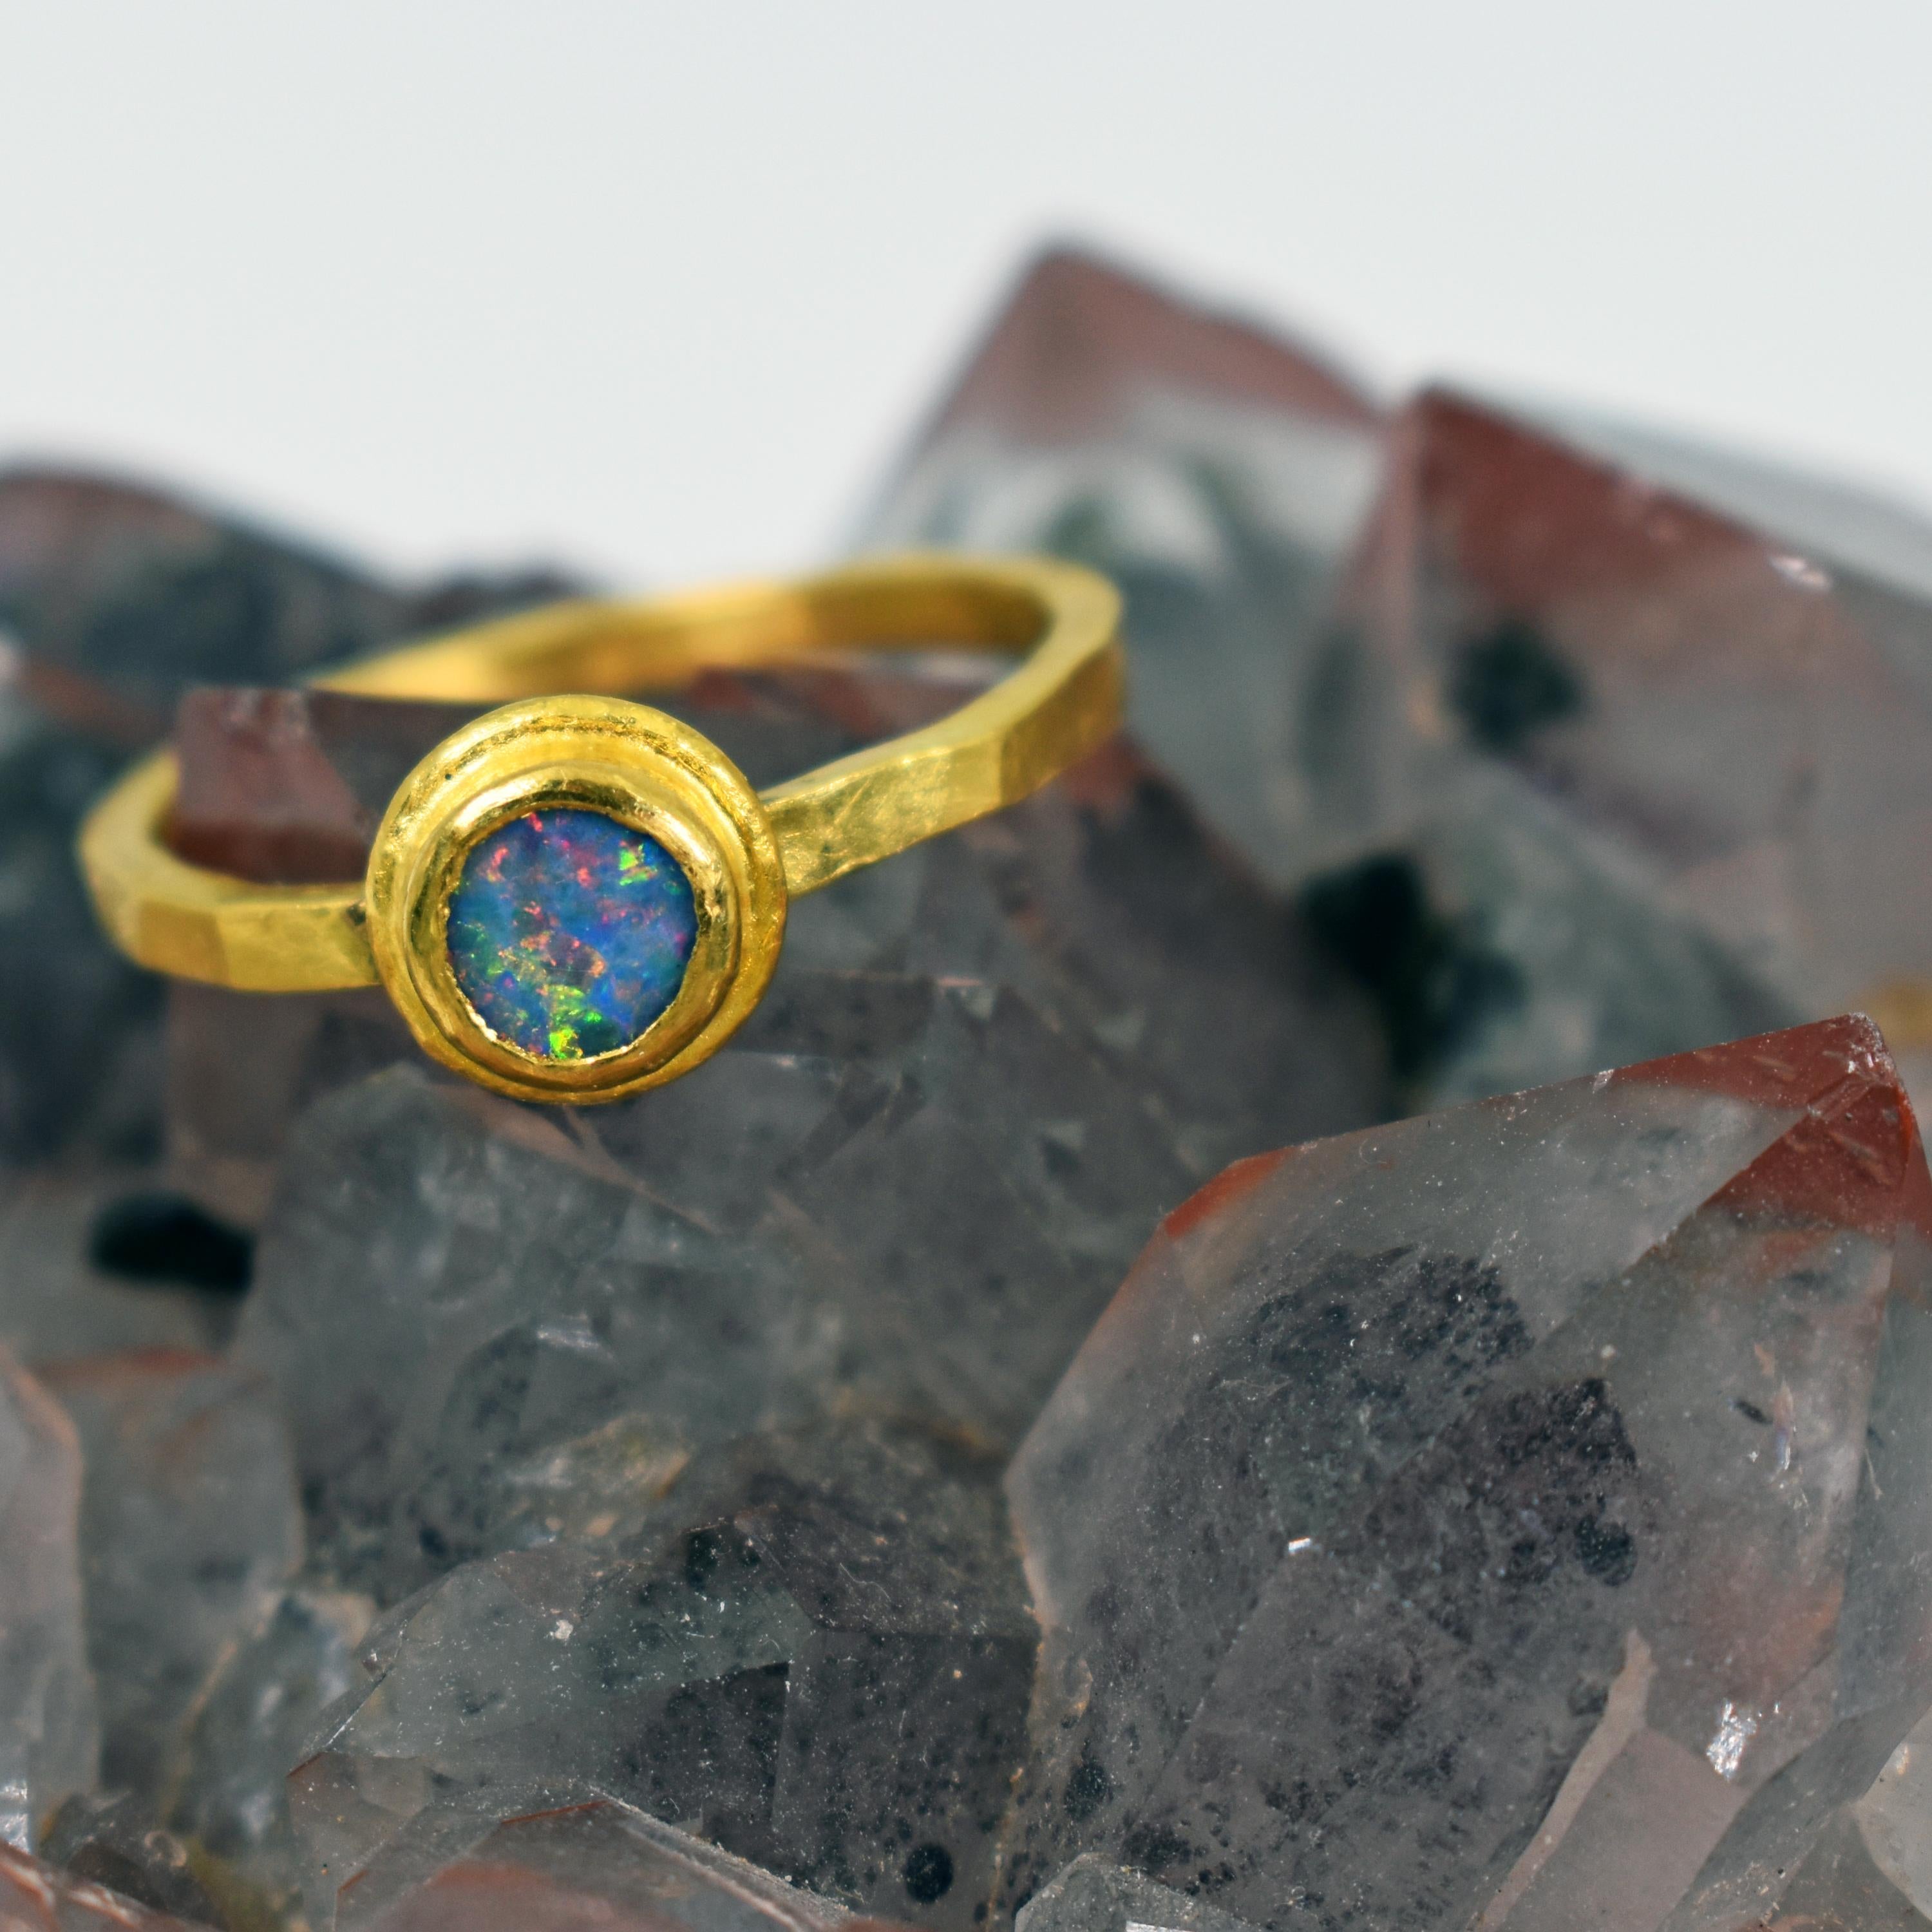 Bague artisanale empilable en or jaune 22k et opale bleue. La bague est de taille 6.5 et a une finition martelée et satinée. Contemporaine, mais rustique et délicate, cette bague minimale est ornée d'une magnifique pierre précieuse Opal colorée. 